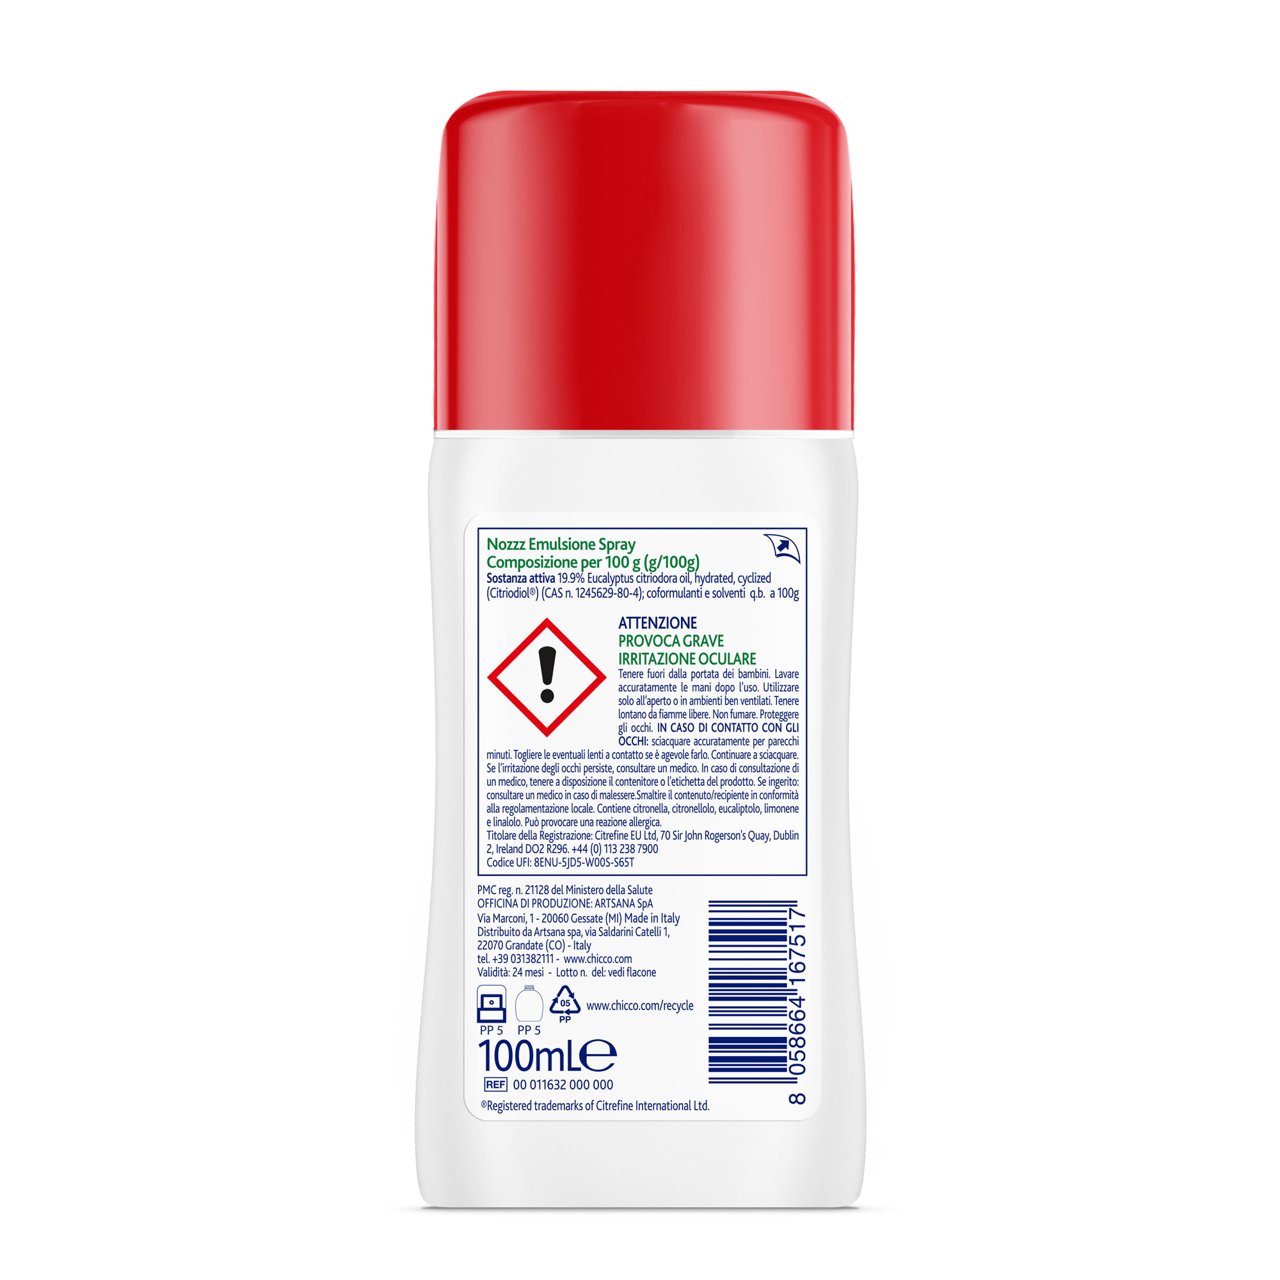 Chicco NoZzz Emulsione Spray Insetto Repellente. image number 5